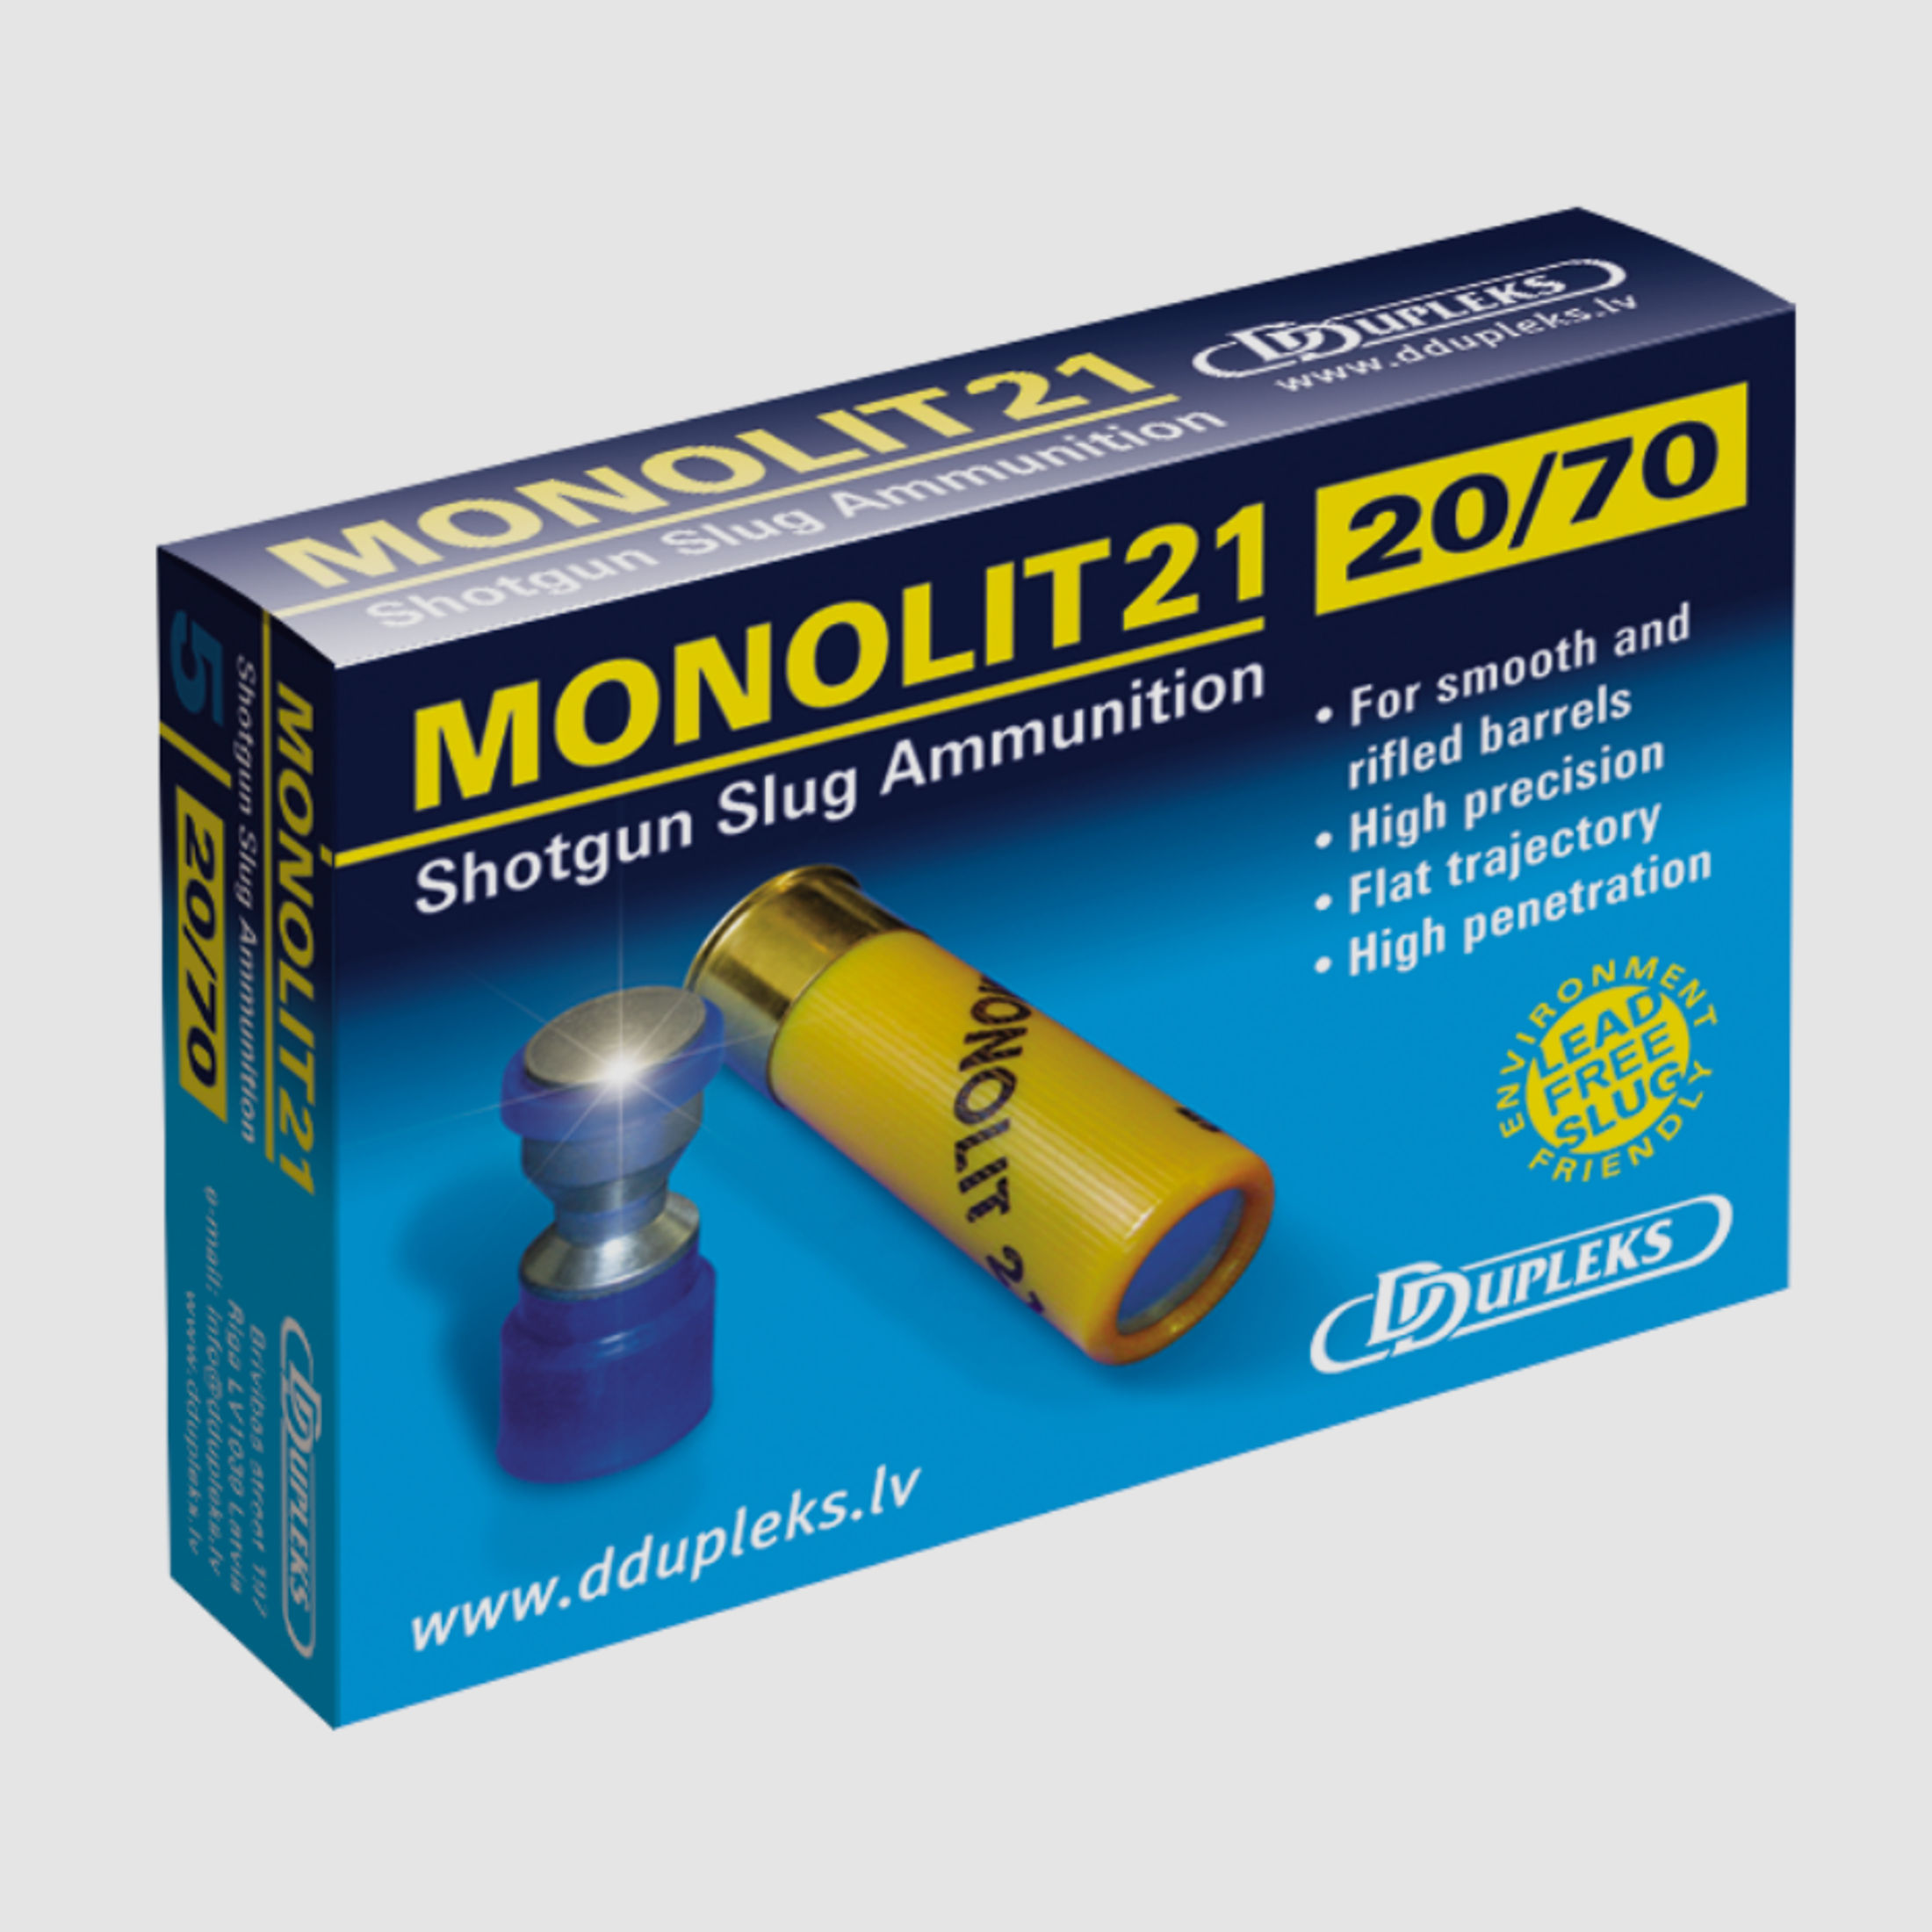 DDupleks 01-01227 Monolit 21 20/70 19,5g 01-01227 Slug 5 Stk.